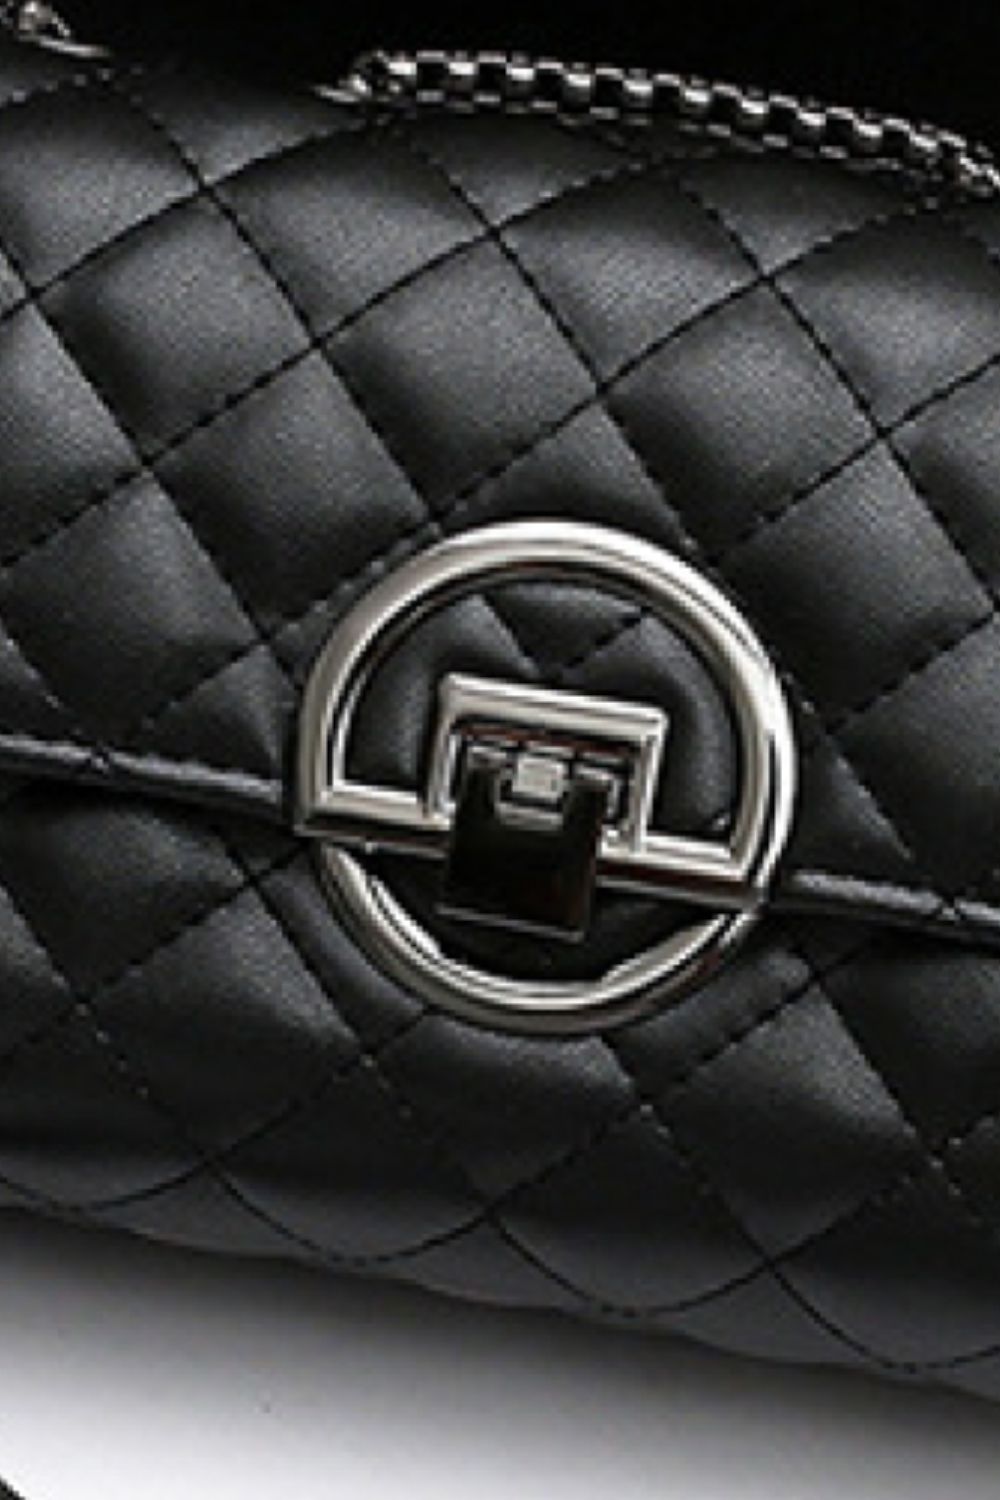 PU Leather Crossbody Bag - EMMY